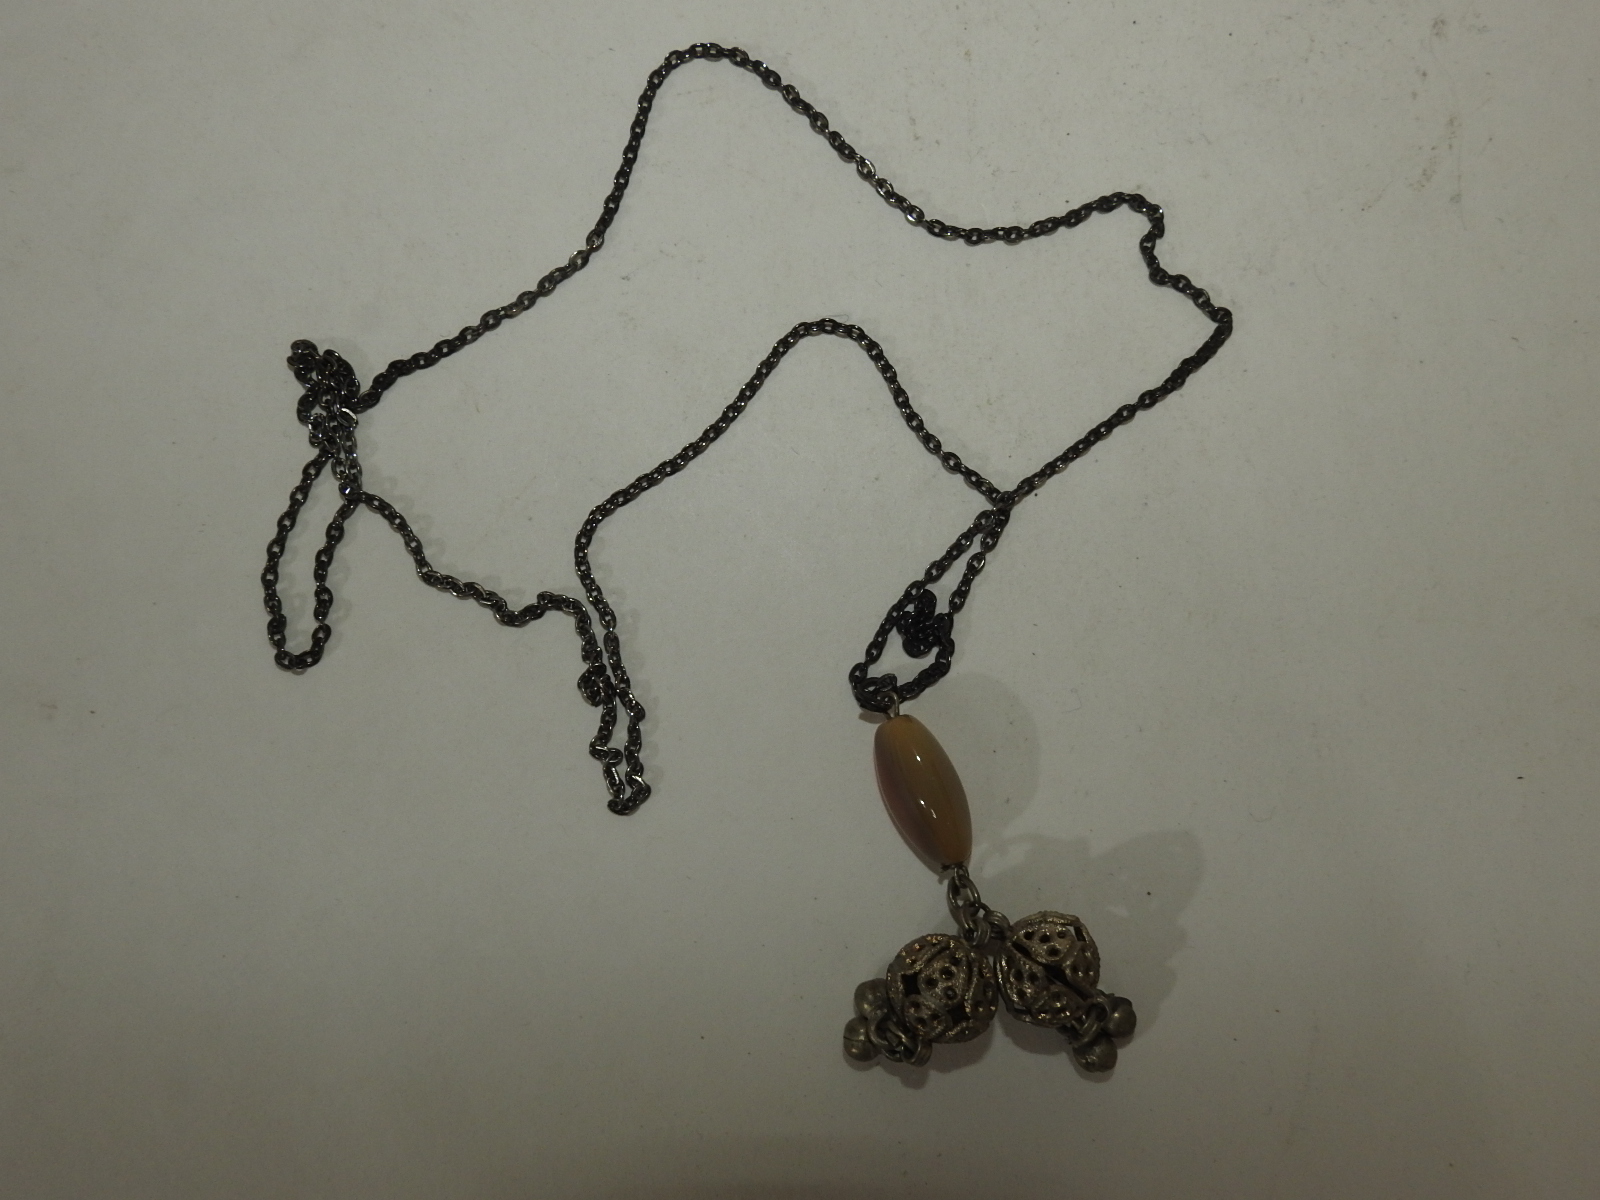 마노옥돌과 금속추로 장식된 목걸이